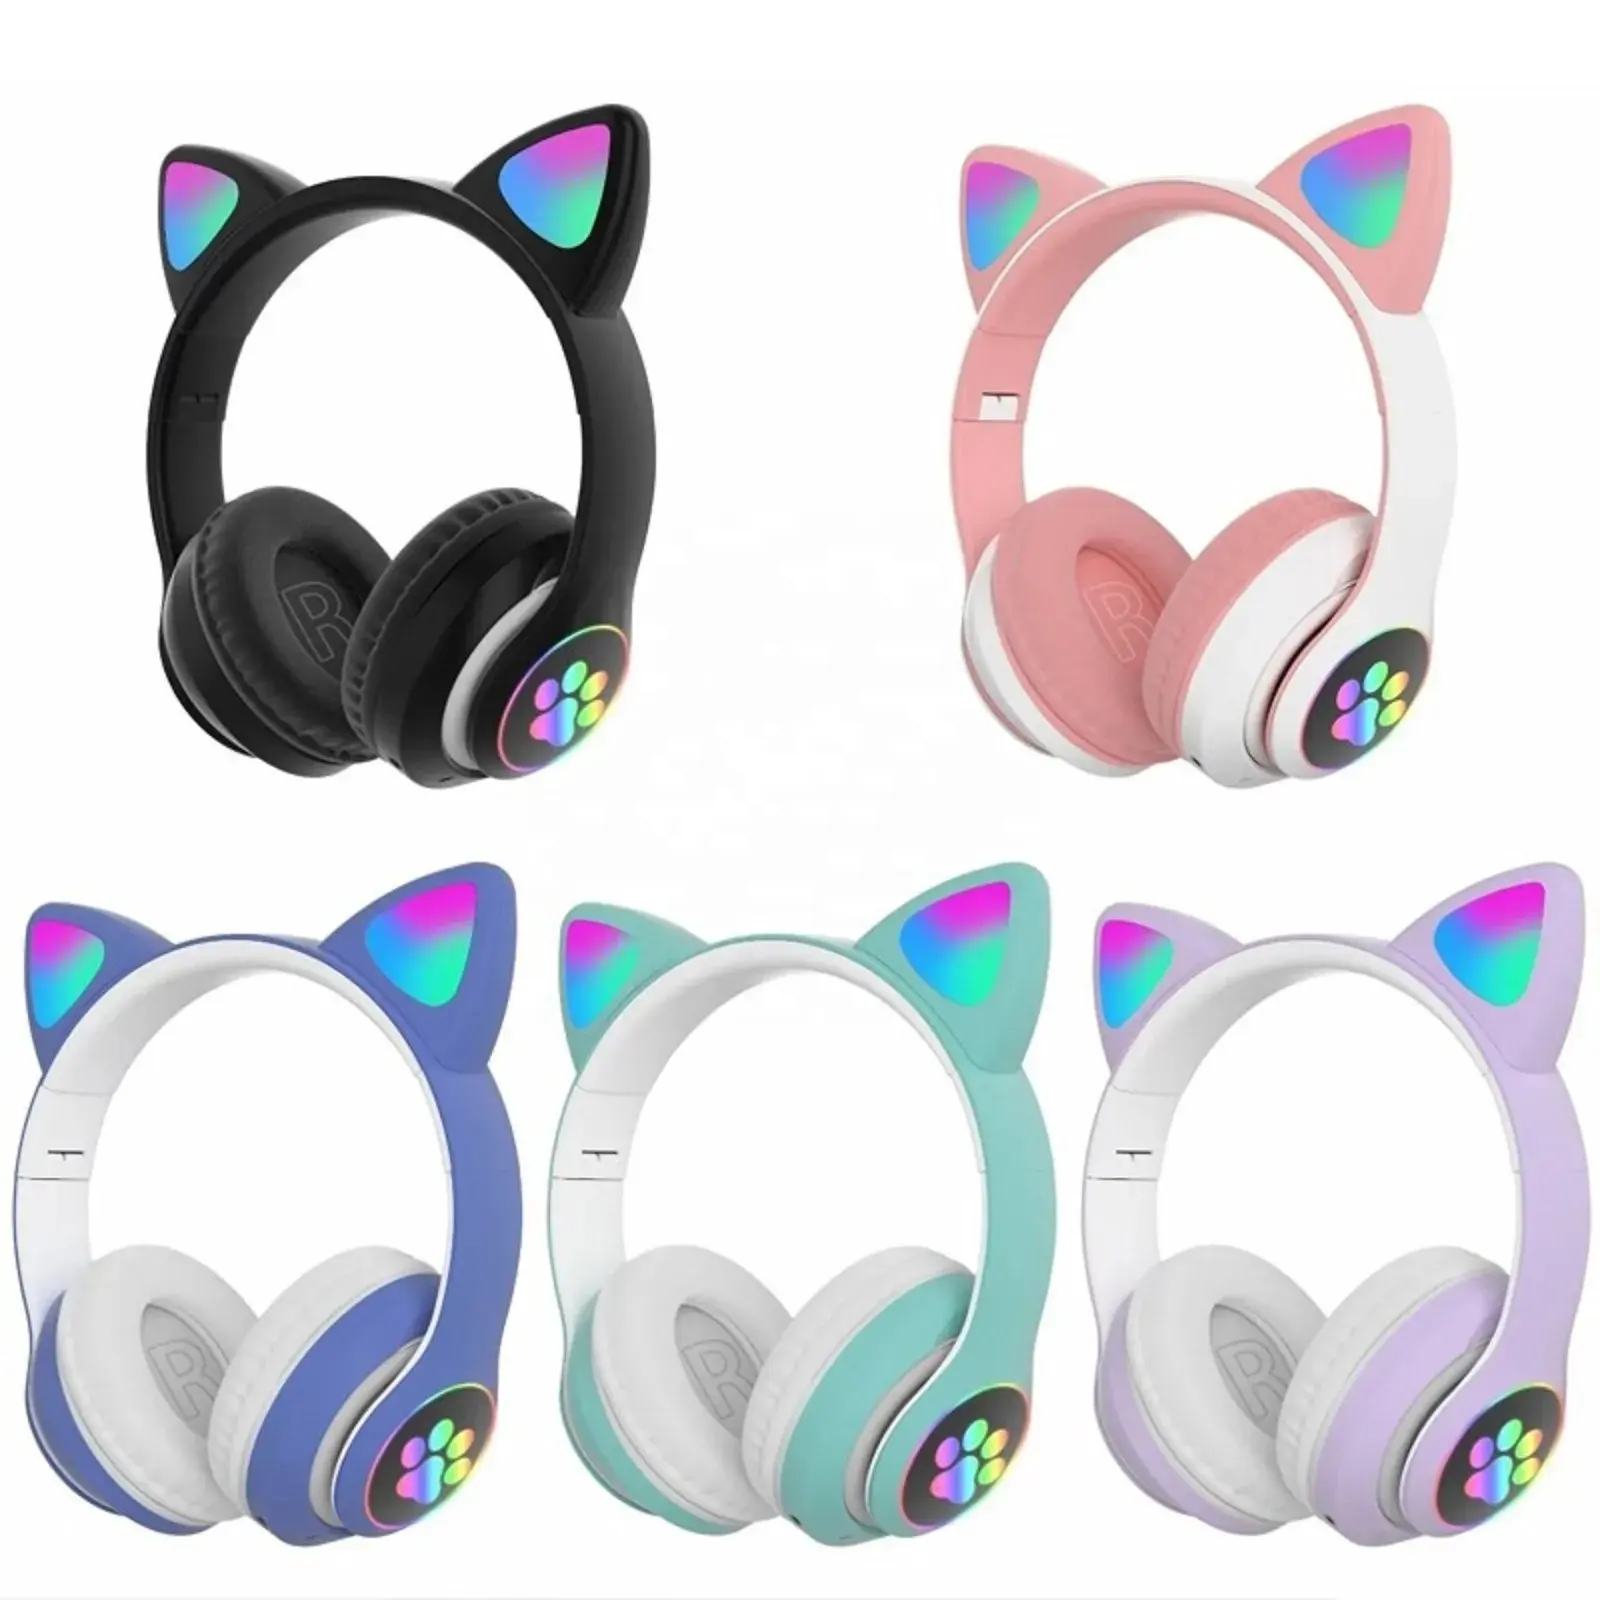 Auriculares para juegos inalámbricos BT TWS auriculares de música estéreo lindos auriculares para juegos con orejas de gato, auriculares para juegos, auriculares P47M de 2, 2, 2, 3, 2, 3, 2, 3